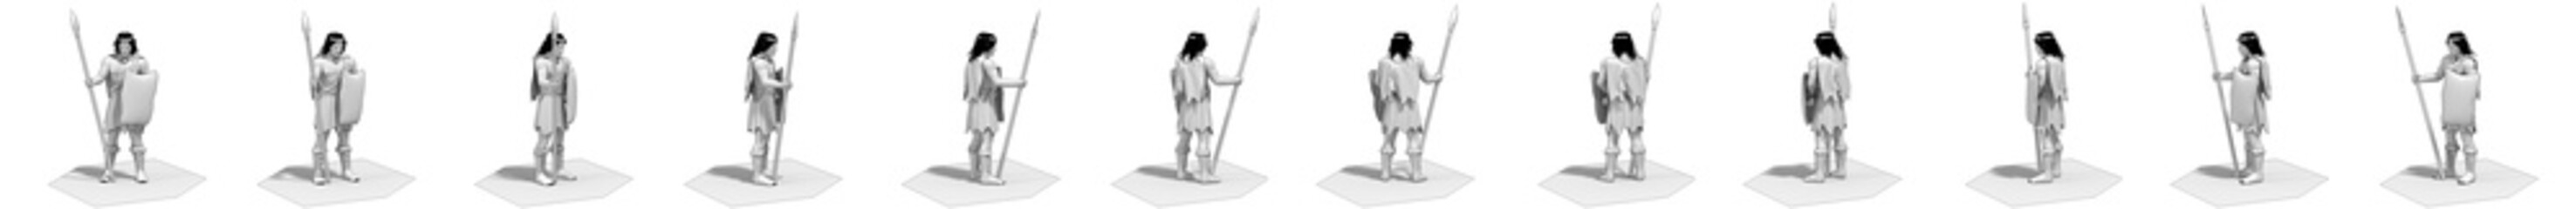 3d render, warrior character set, illustration 